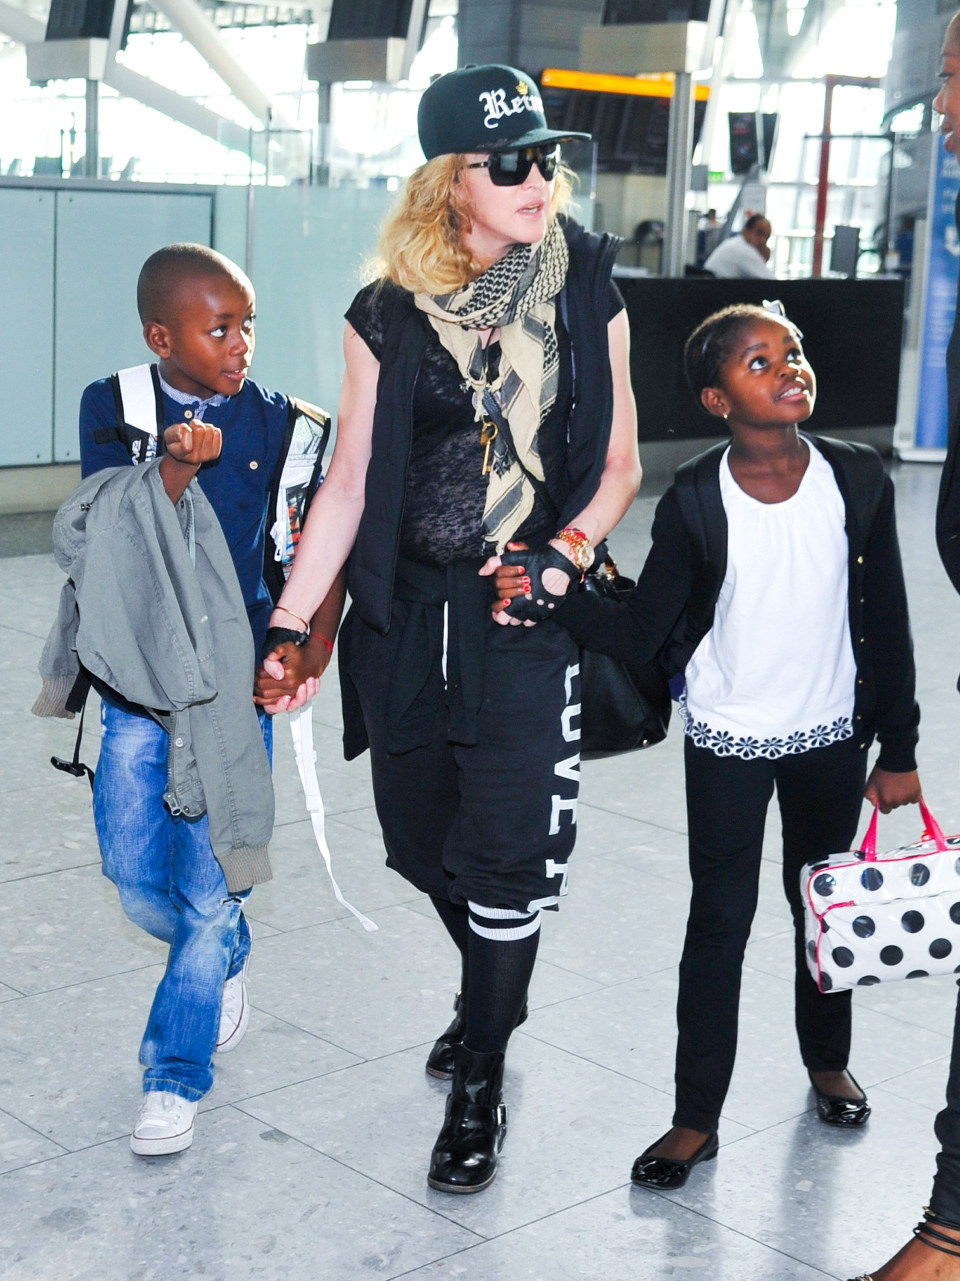 Pop star Madonna to visit Malawi on July 10